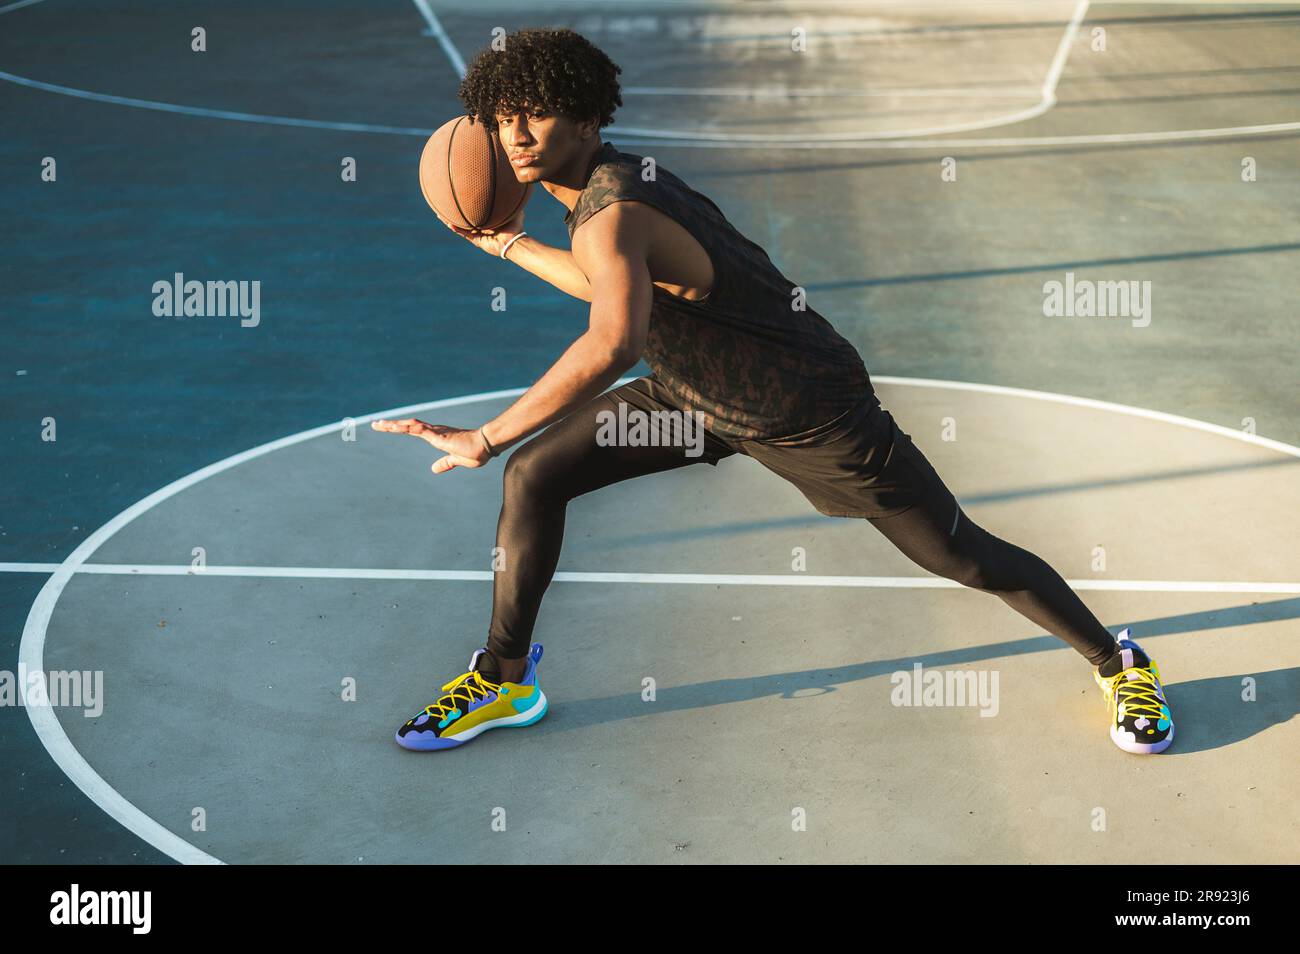 Athlète qui lance le basket-ball debout sur un terrain de sport Banque D'Images